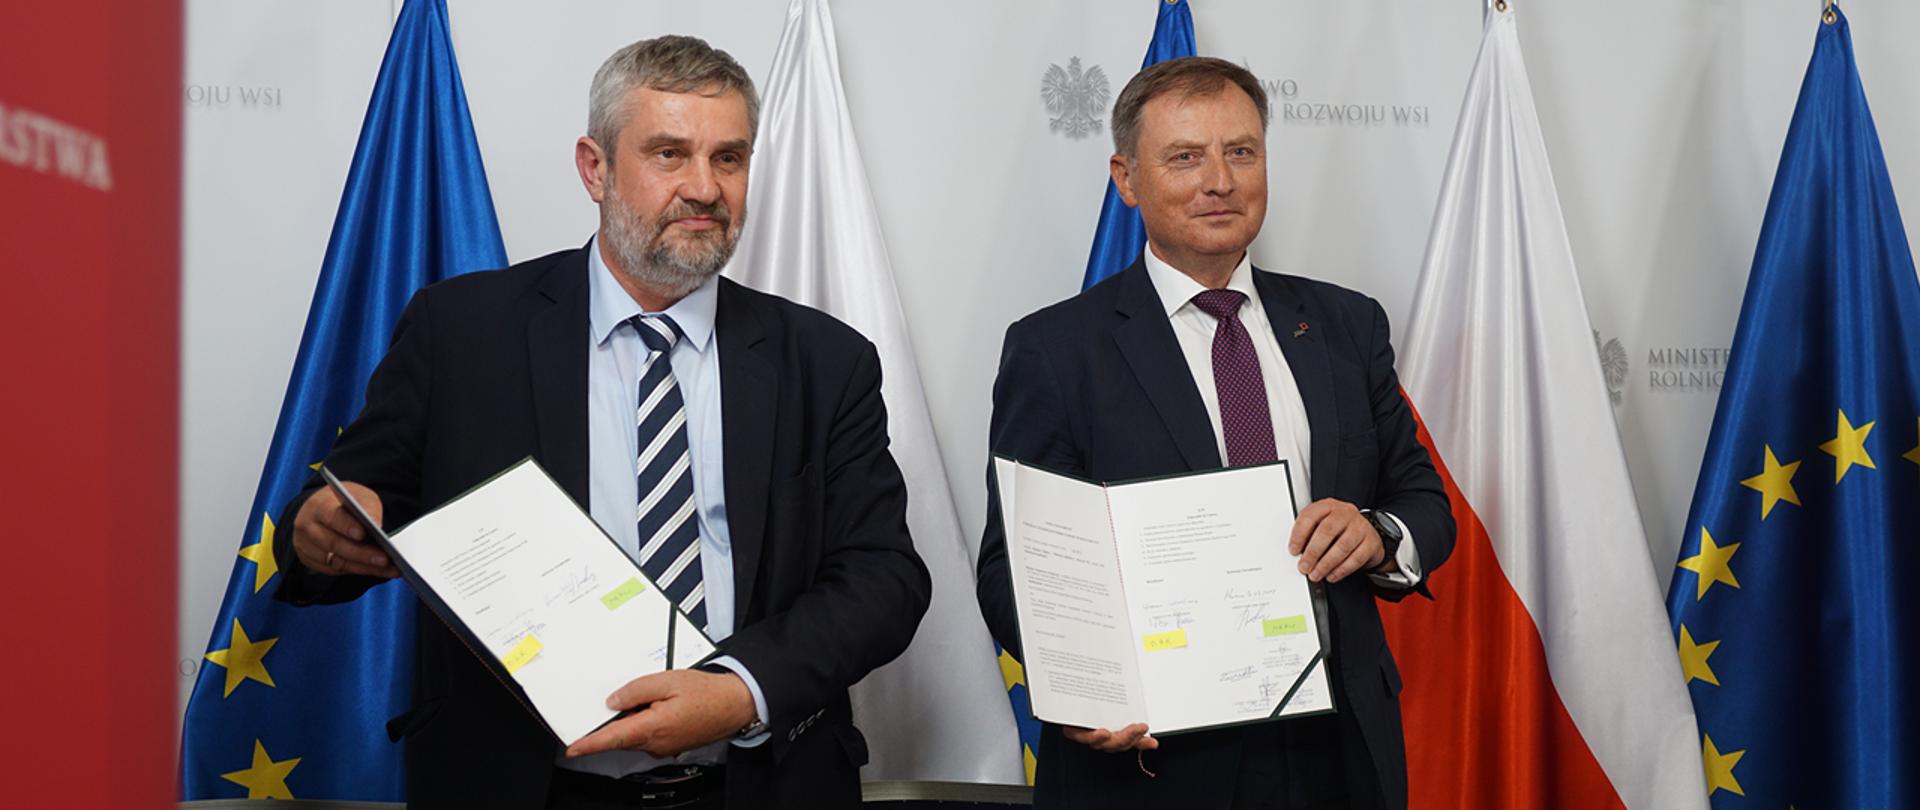 Podpisanie umowy dotyczącej utworzenia Funduszu Gwarancji Rolnych